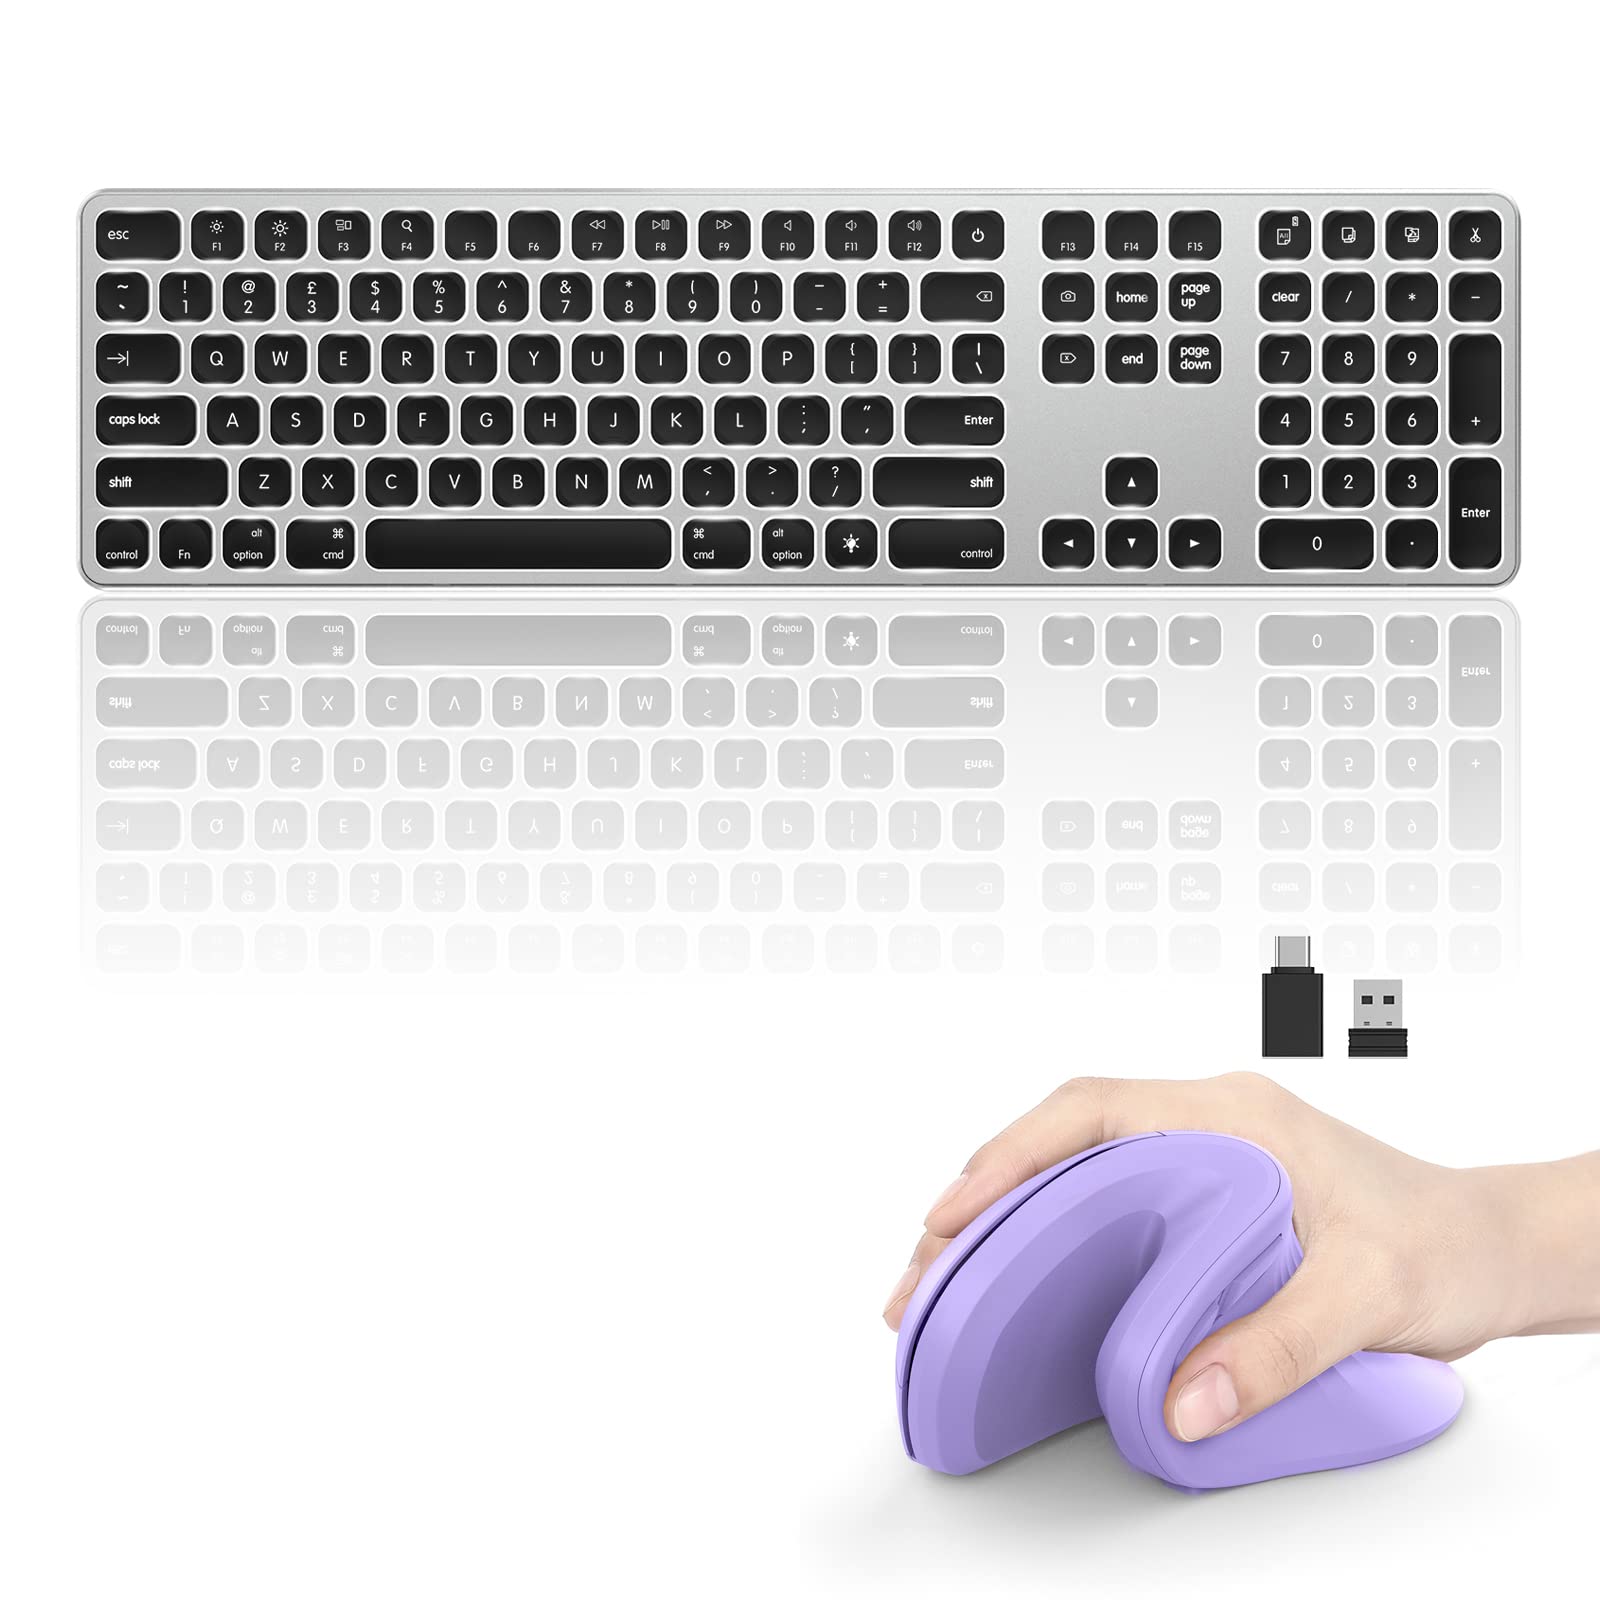 seenda Wireless Backlit Keyboard for Mac & Purple Jiggler Vertical Mouse